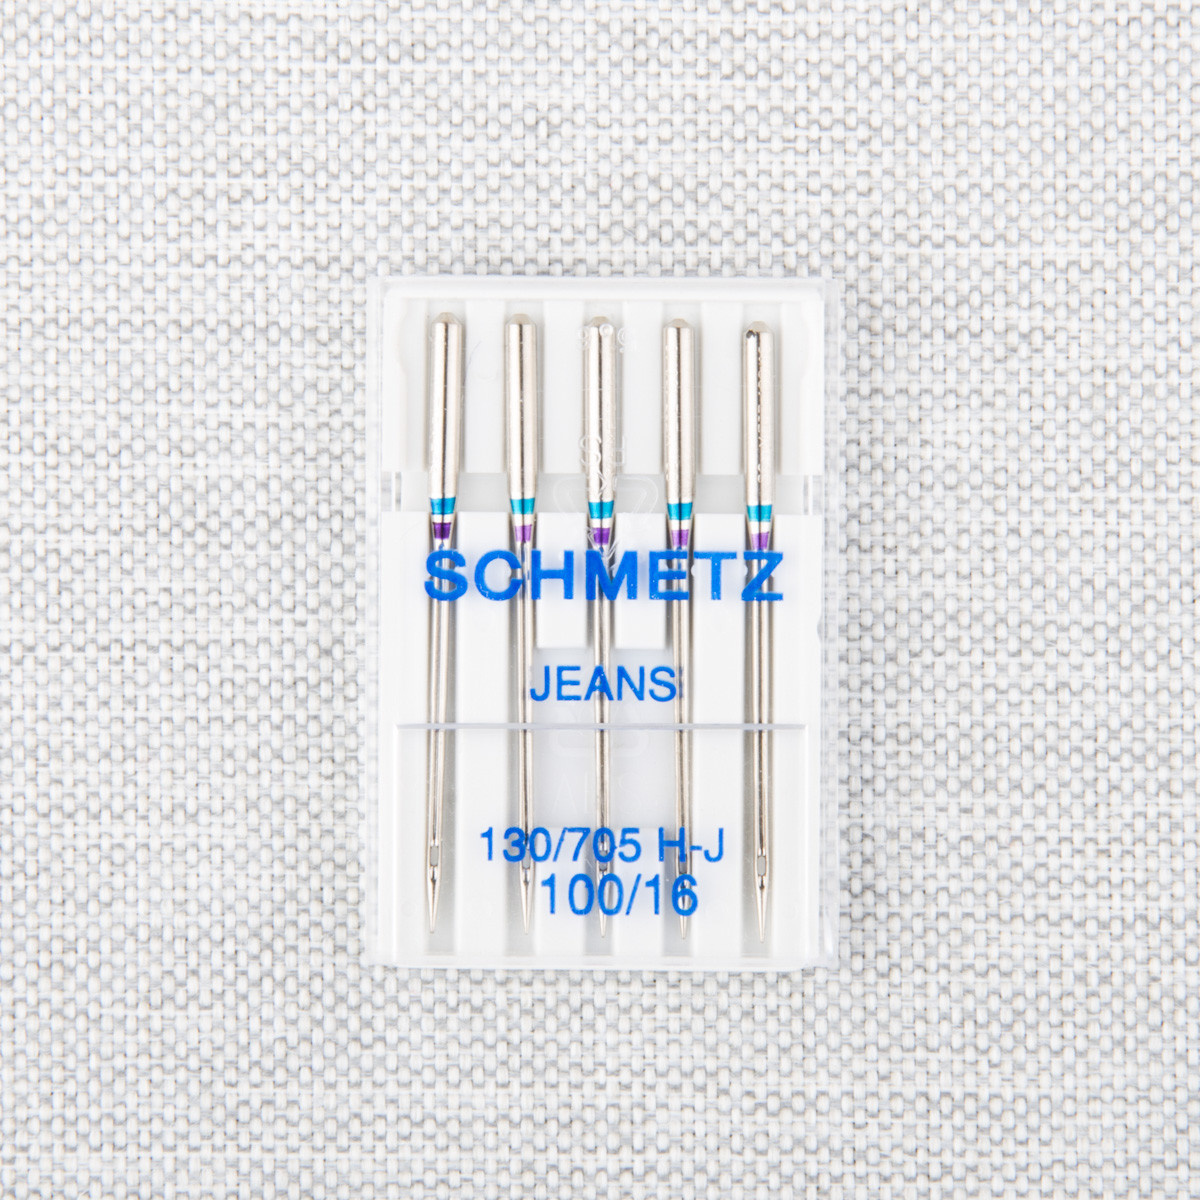 Schmetz Aiguilles à denim Schmetz #1712 - 100/16 - 5 unités